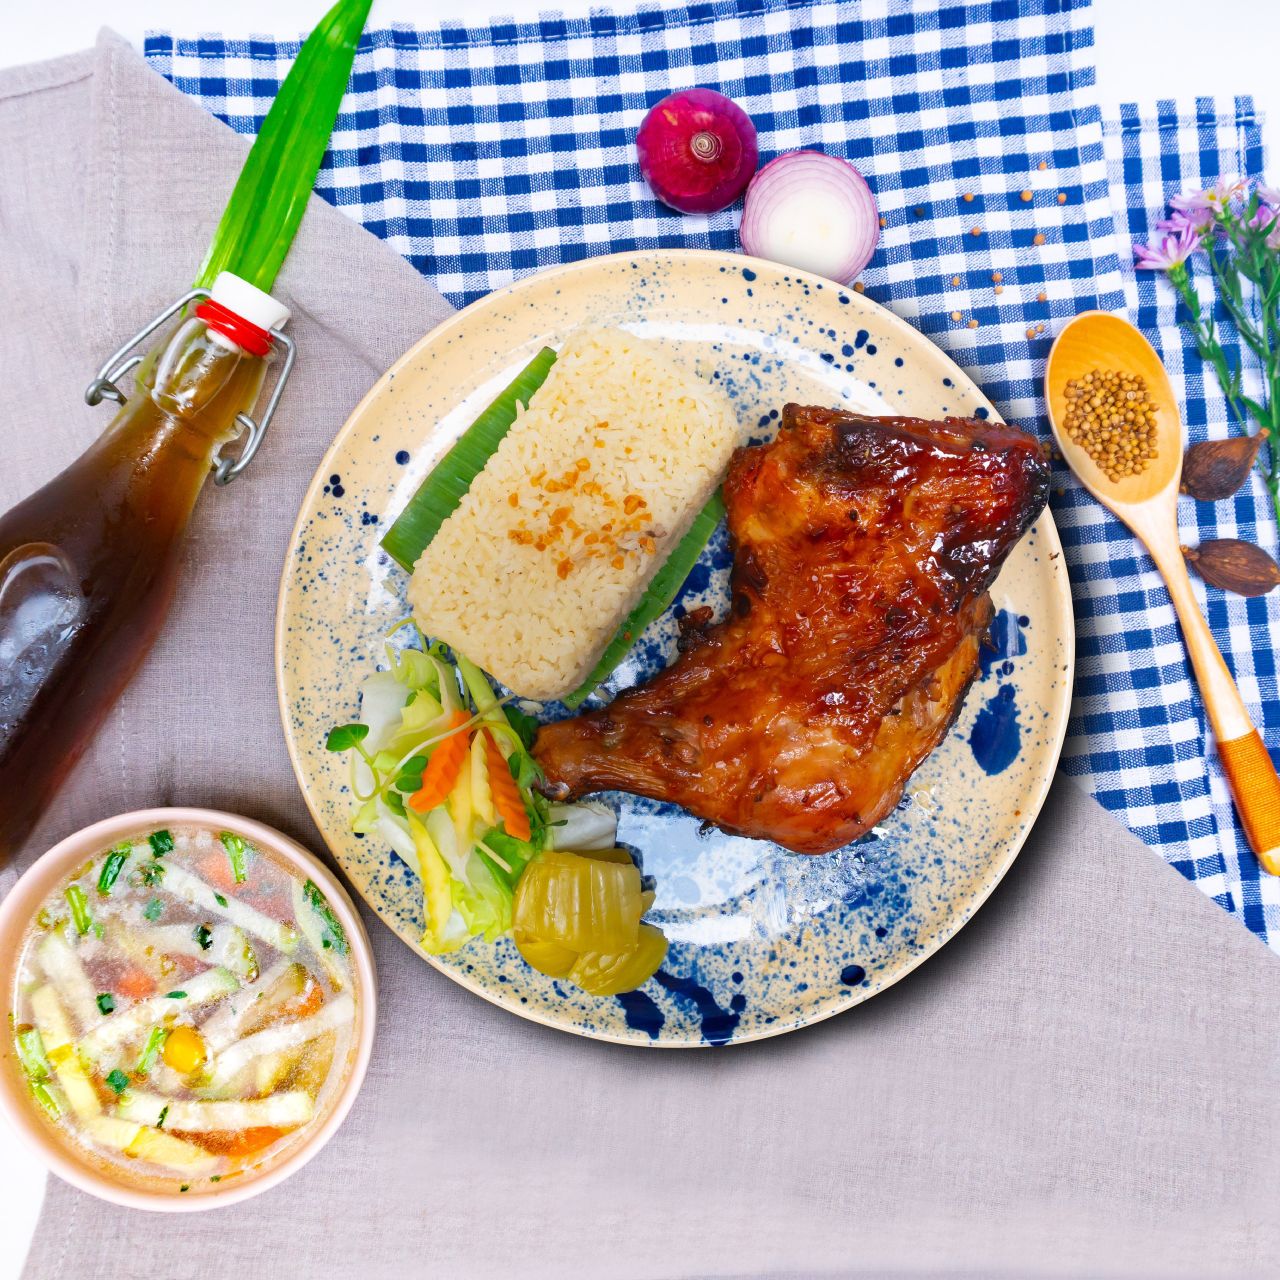 cơm gà quay 1 Saigon Everywhereee – Hương vị từ gian bếp của mẹ